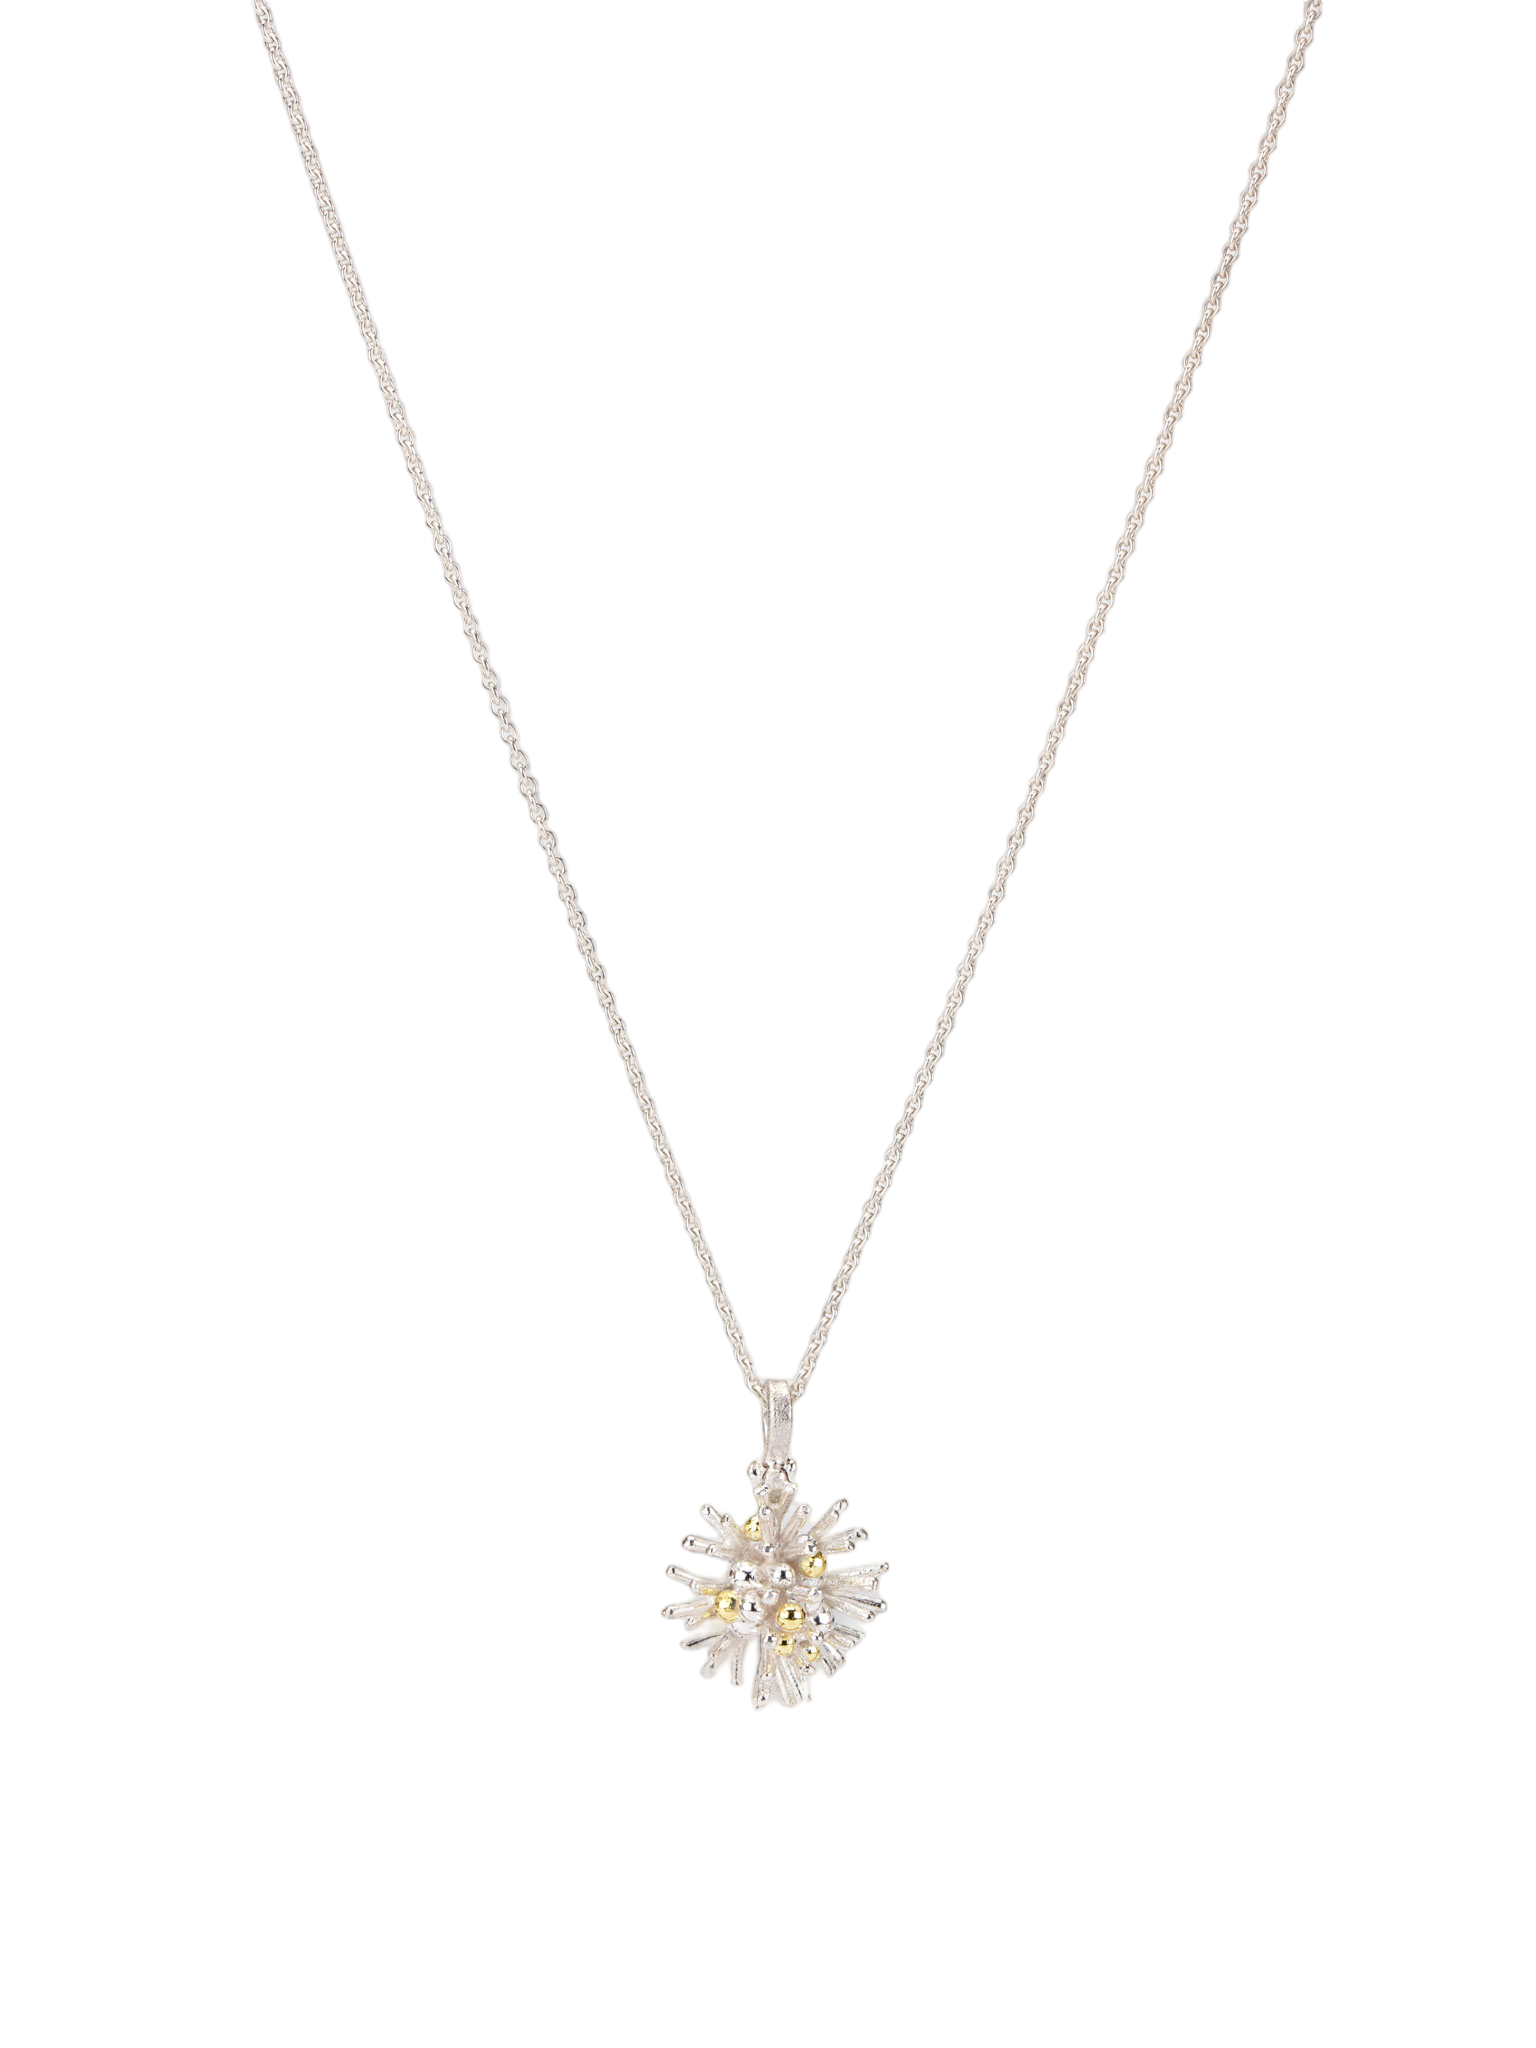 Sea urchin pendant necklace